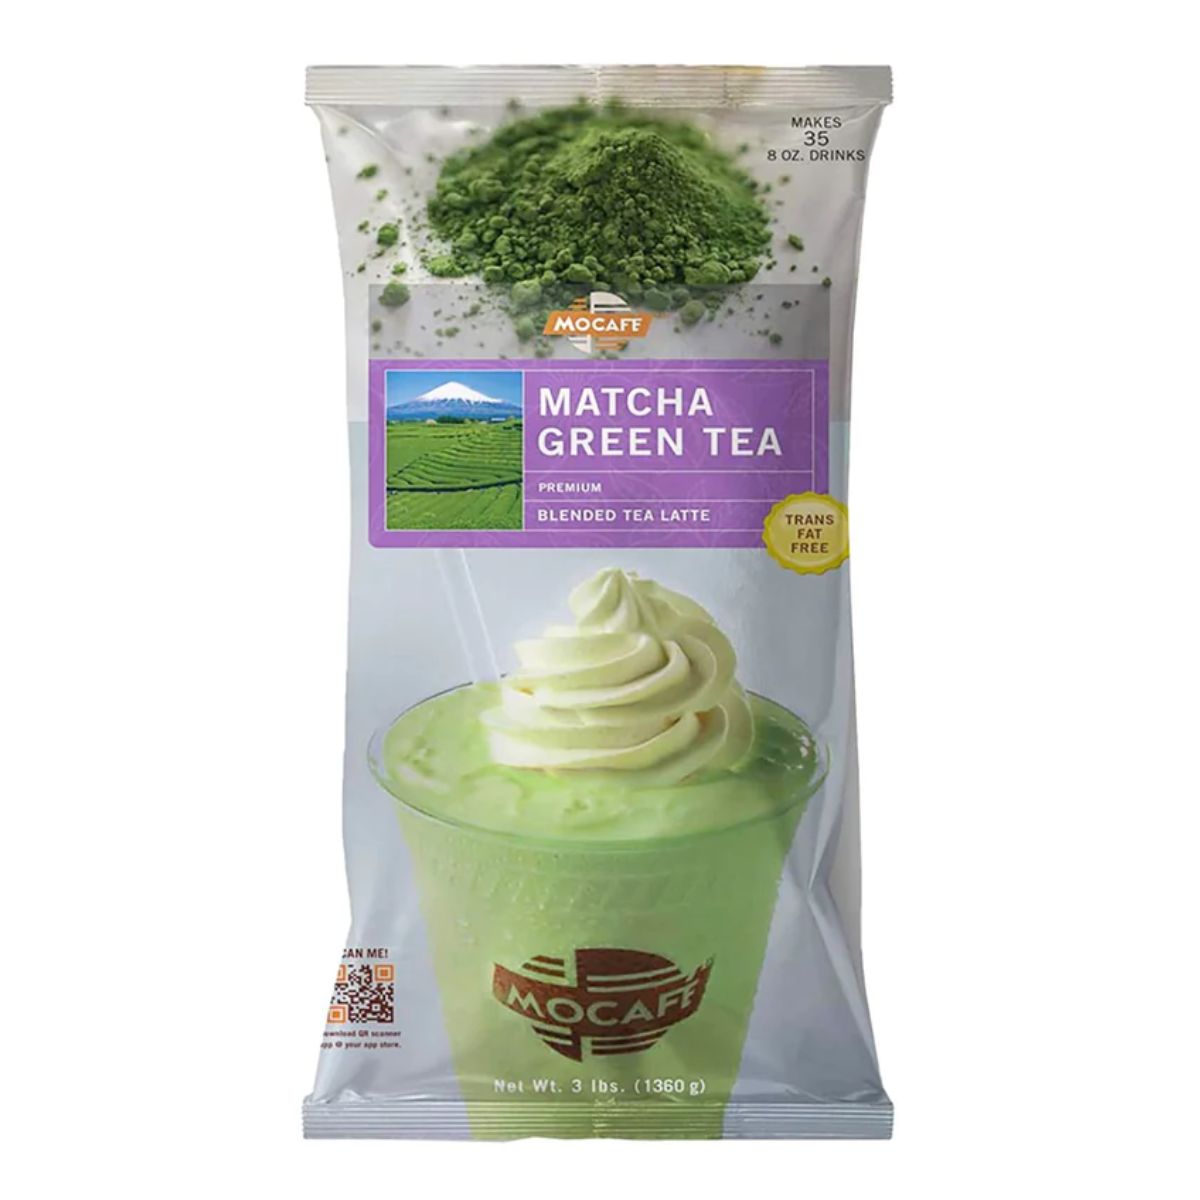 MoCafe - Matcha Green Tea - Premium Tea Latte - 3 lb. Bulk Bag-1